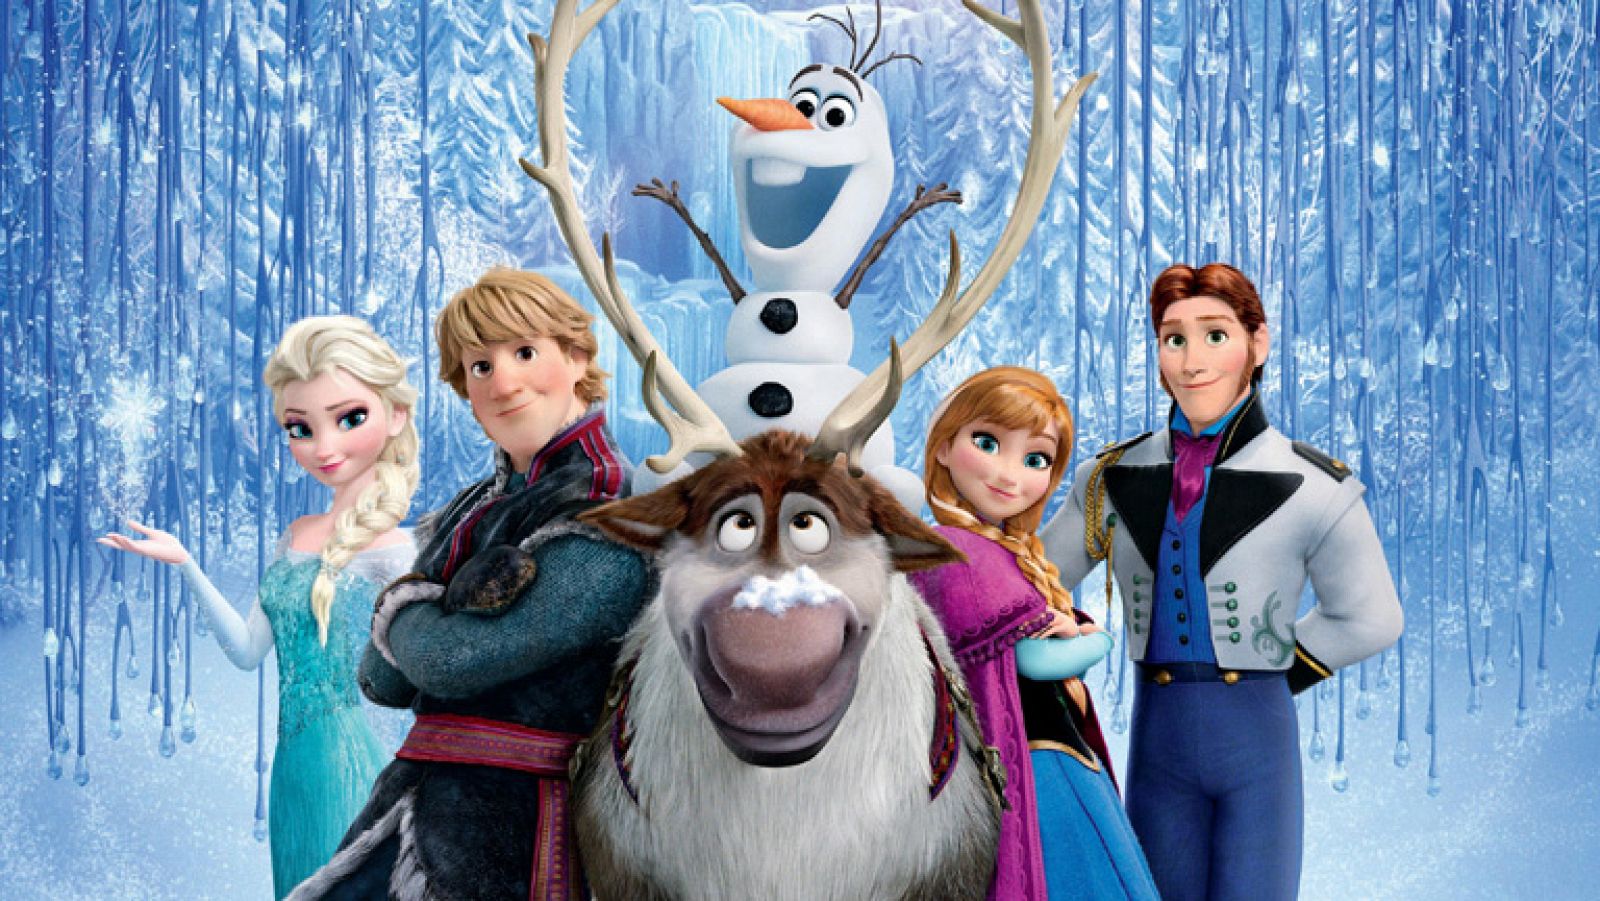 Cultura en Rtve.es: RTVE.es os ofrece un clip exclusivo de 'Frozen: El reino del hielo' | RTVE Play